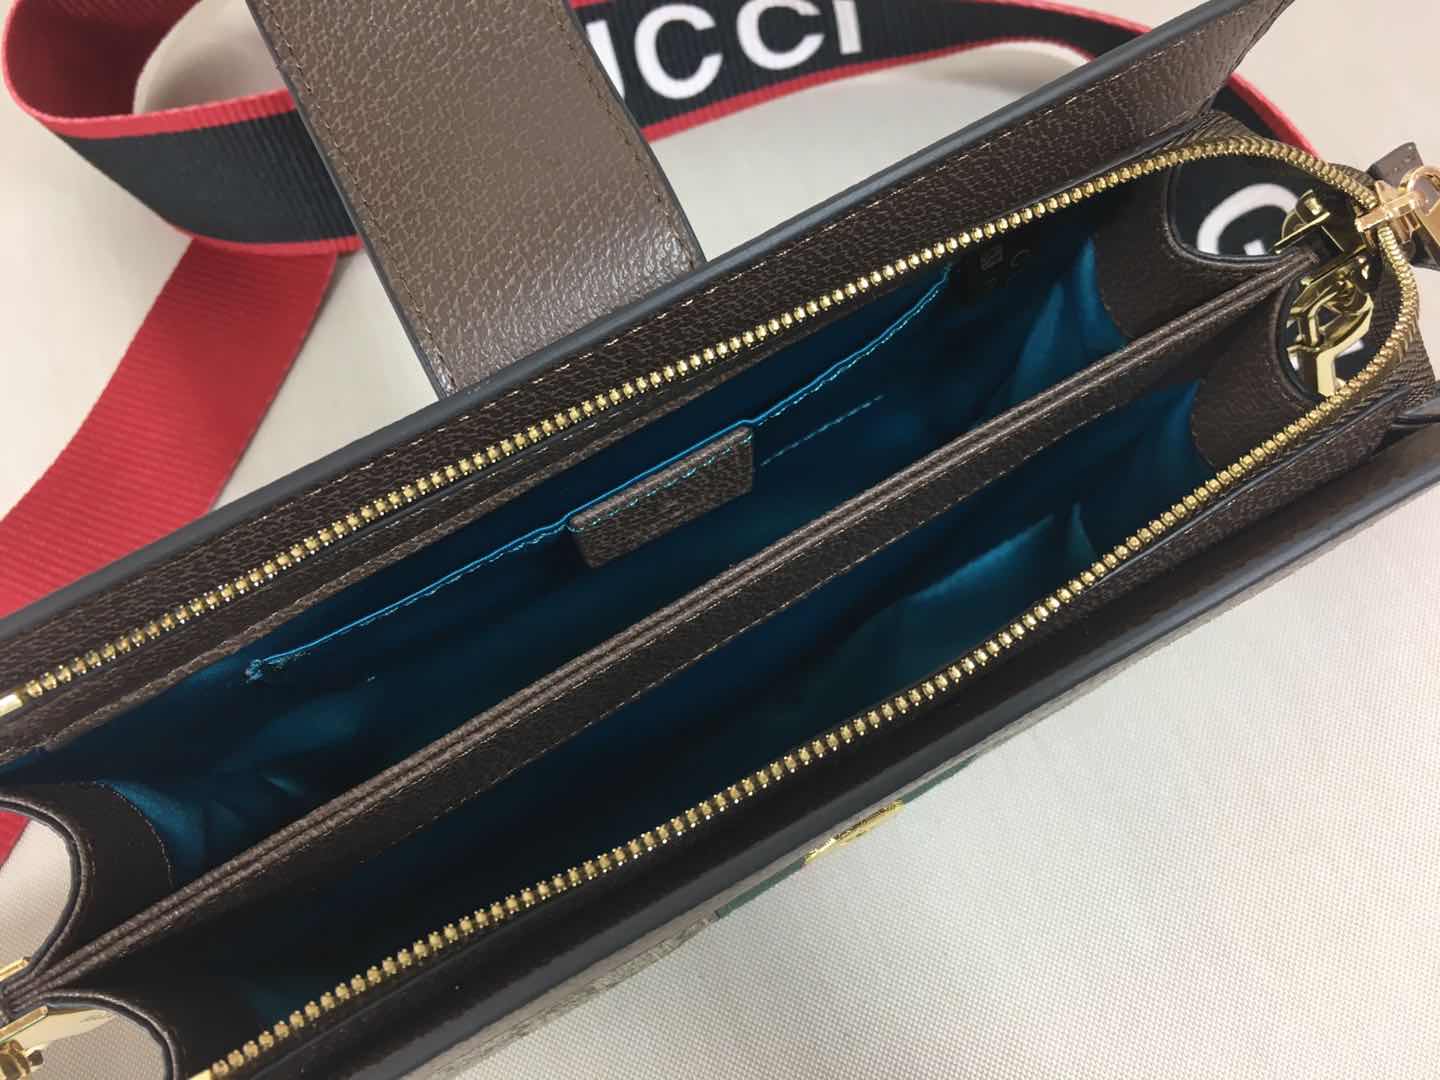 Designer Handbags GI 076